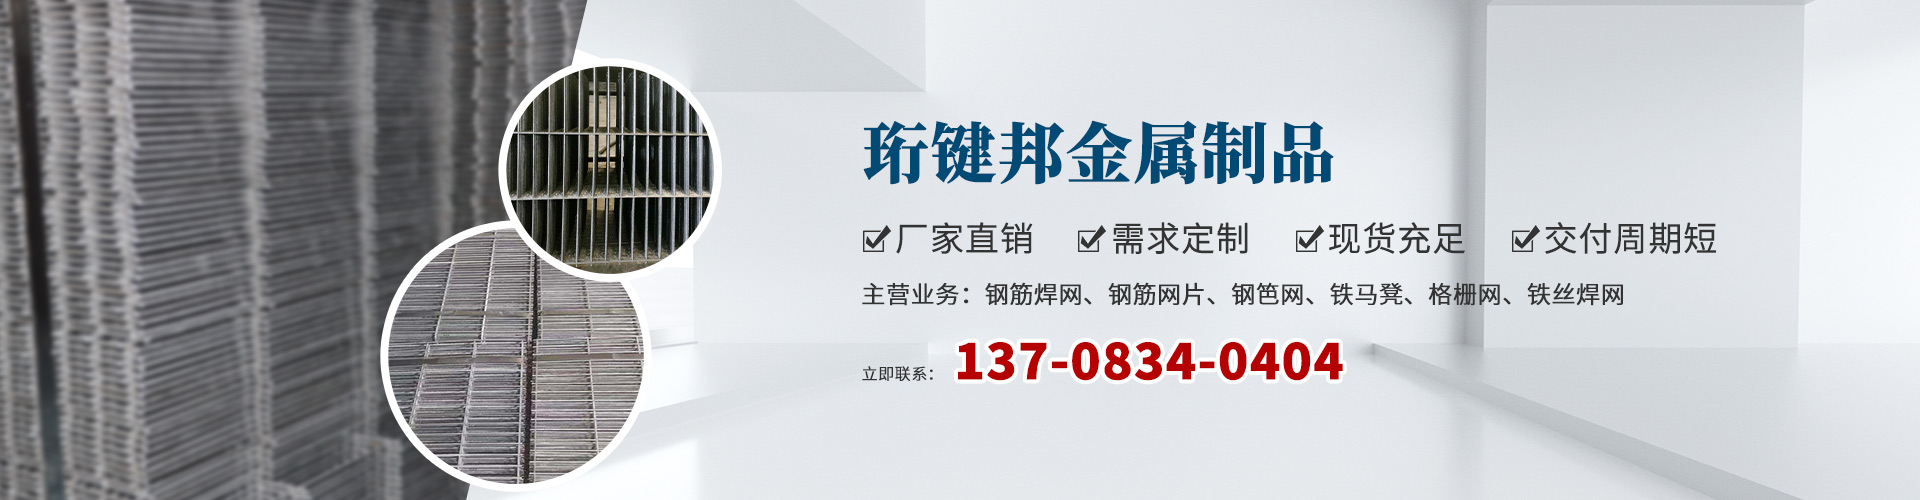 重庆钢笆网片定制,四川钢笆网片生产厂家,贵州钢笆网片报价